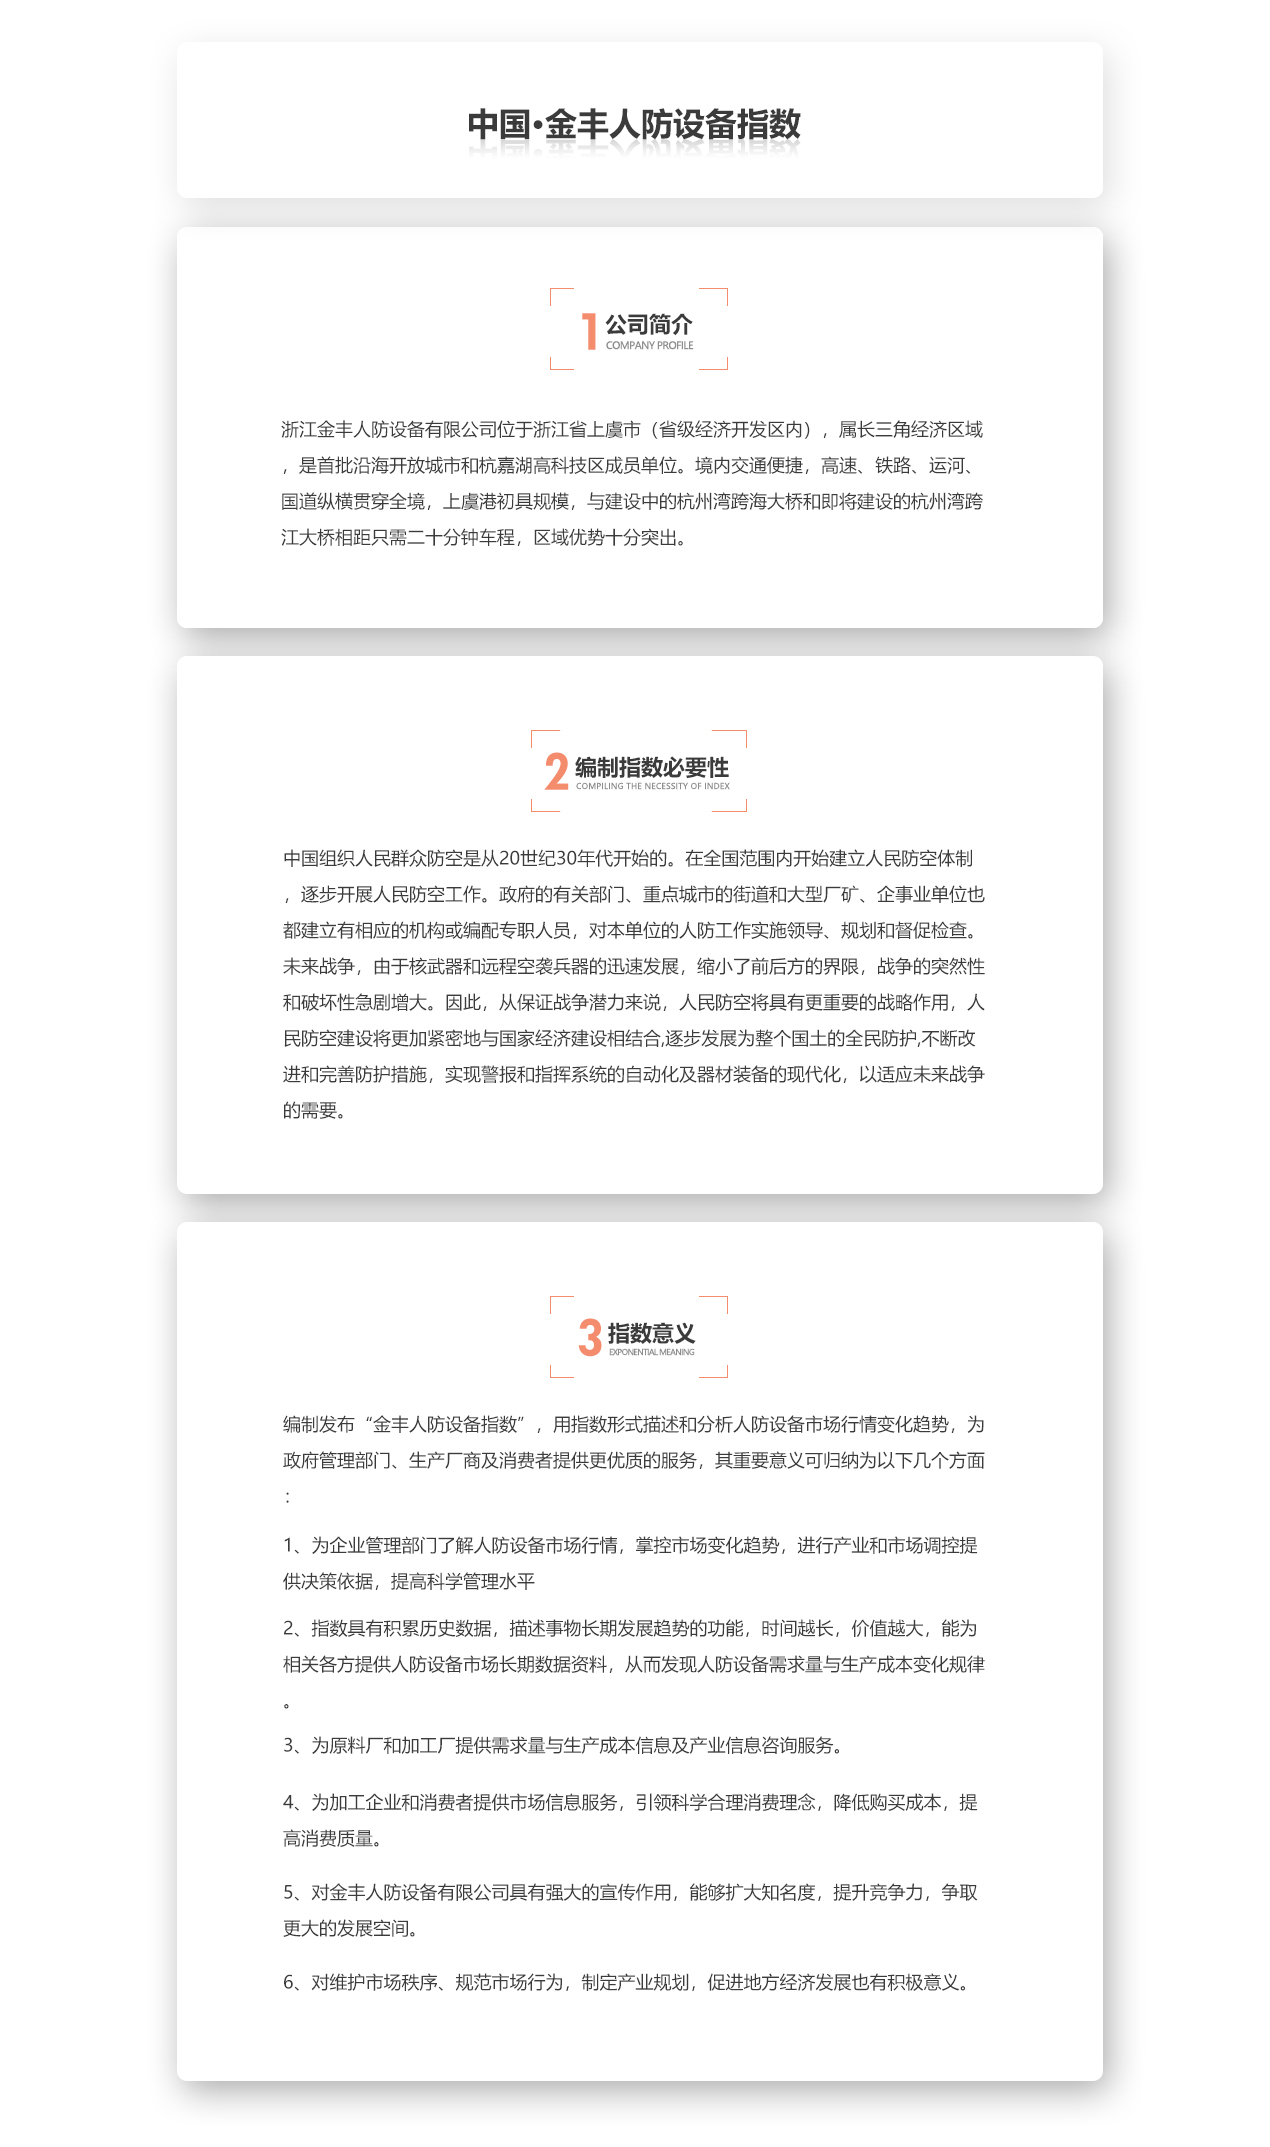 中国·金丰人防设备指数.jpg